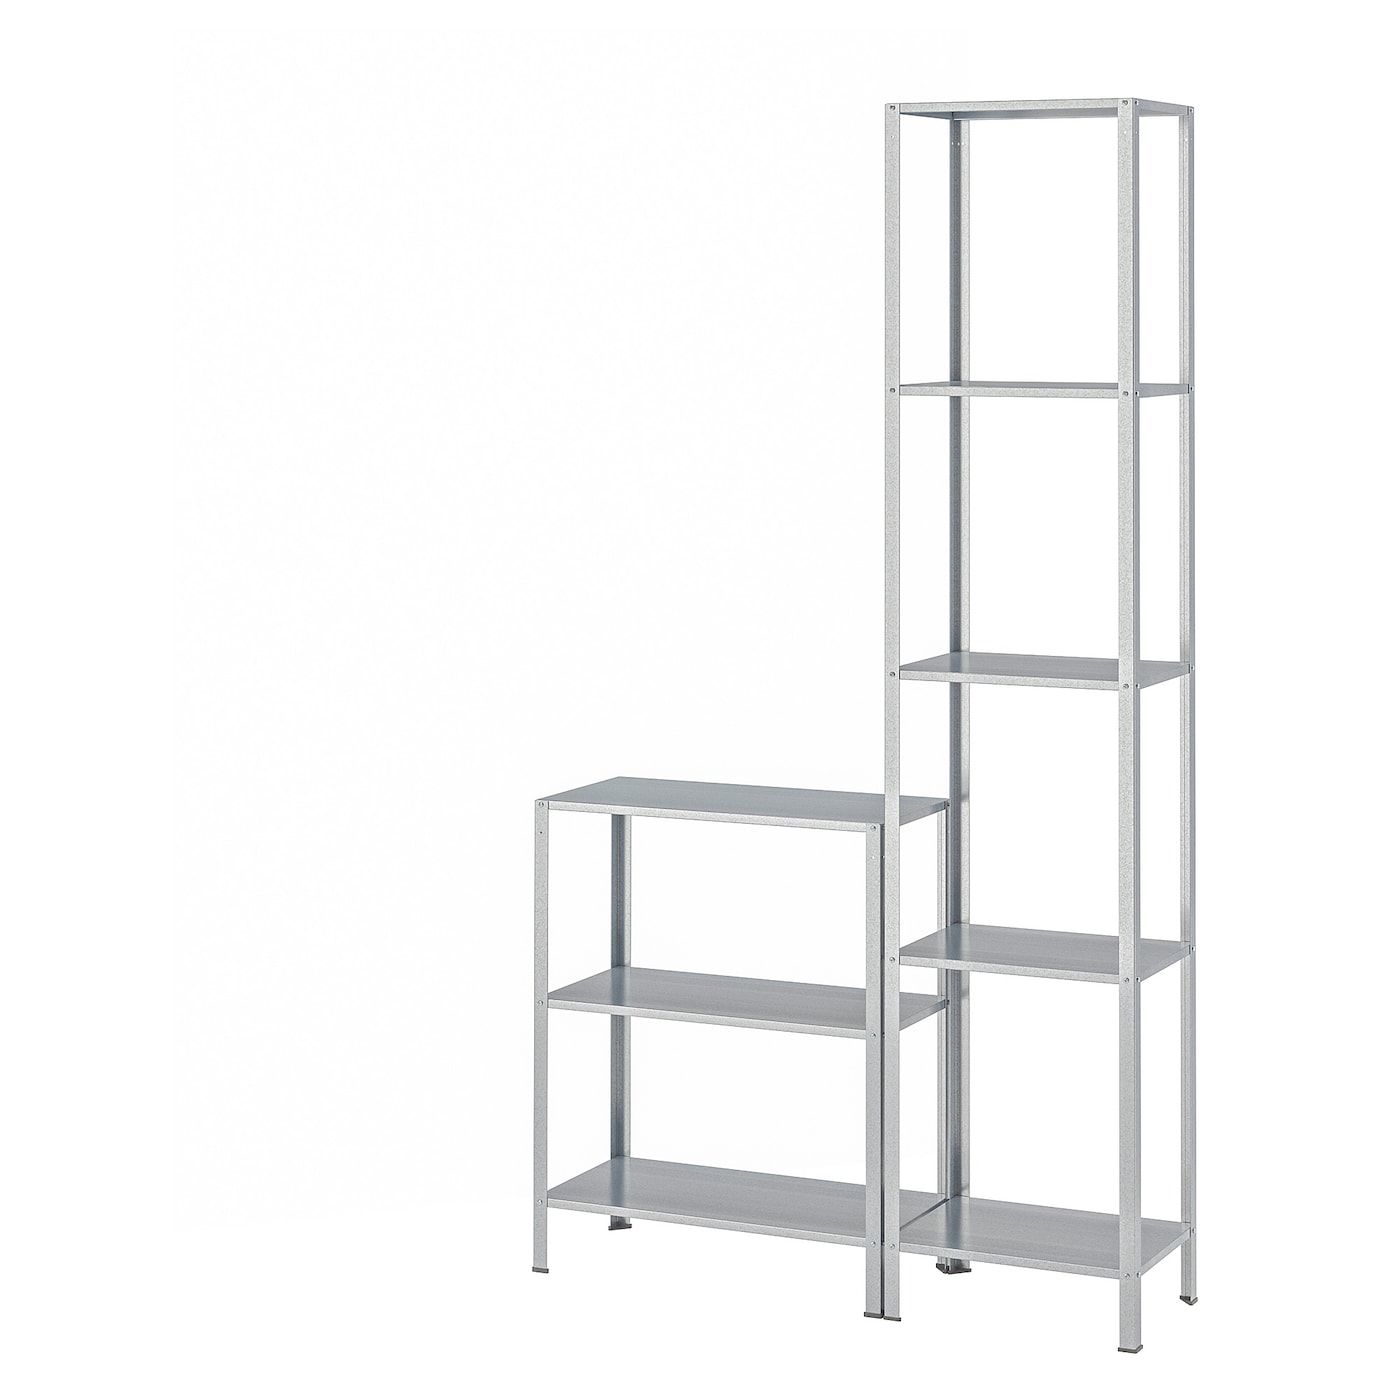 Стеллаж - IKEA HYLLIS, 100х27х183 см, оцинкованная сталь, ХИЛЛИС ИКЕА